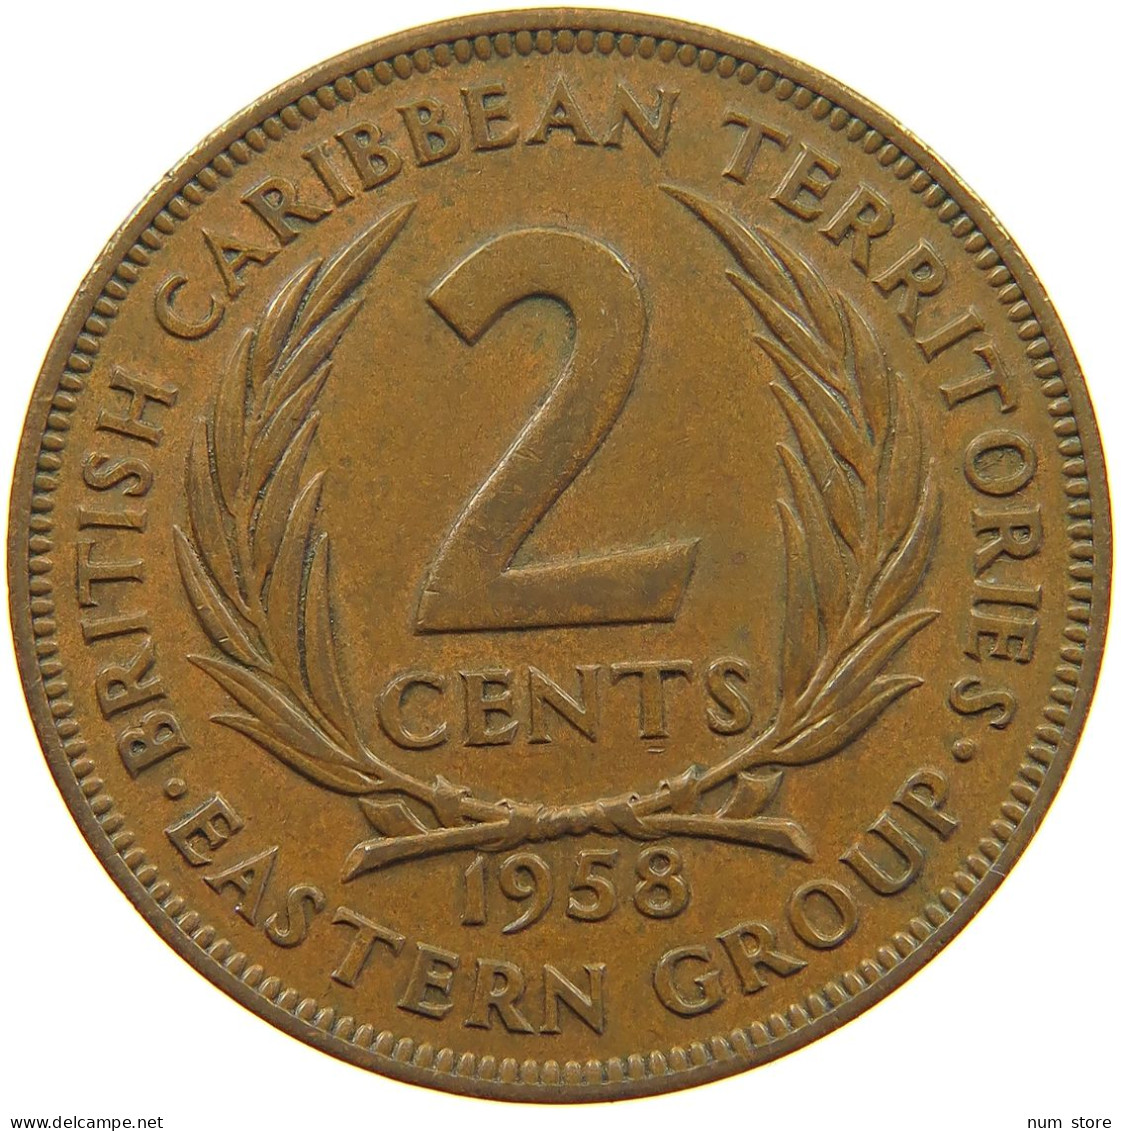 BRITISH CARIBBEAN TERRITORIES 2 CENTS 1958 Elizabeth II. (1952-2022) #c014 0453 - British Caribbean Territories